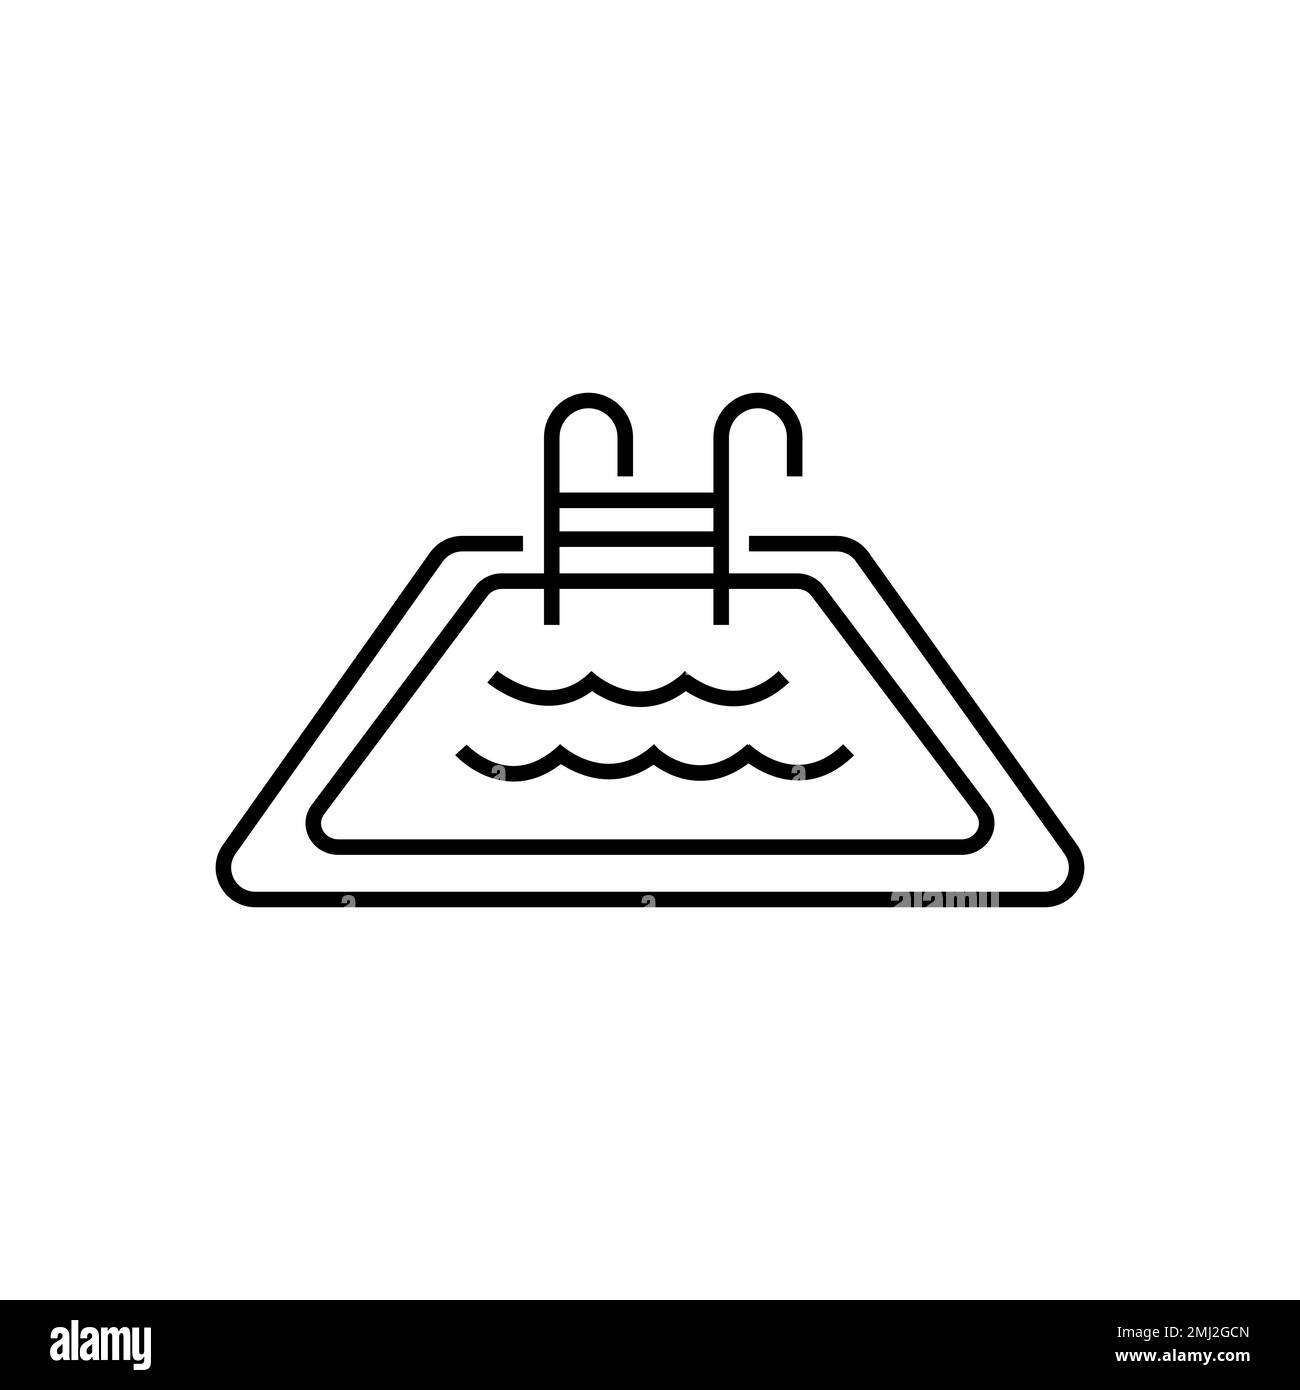 Icona del pool di linee isolata su sfondo bianco. Delineare il simbolo dell'aquapark per la progettazione di siti Web, applicazioni mobili, interfaccia utente. Pittogramma dell'acqua. Illustrazione vettoriale, Illustrazione Vettoriale